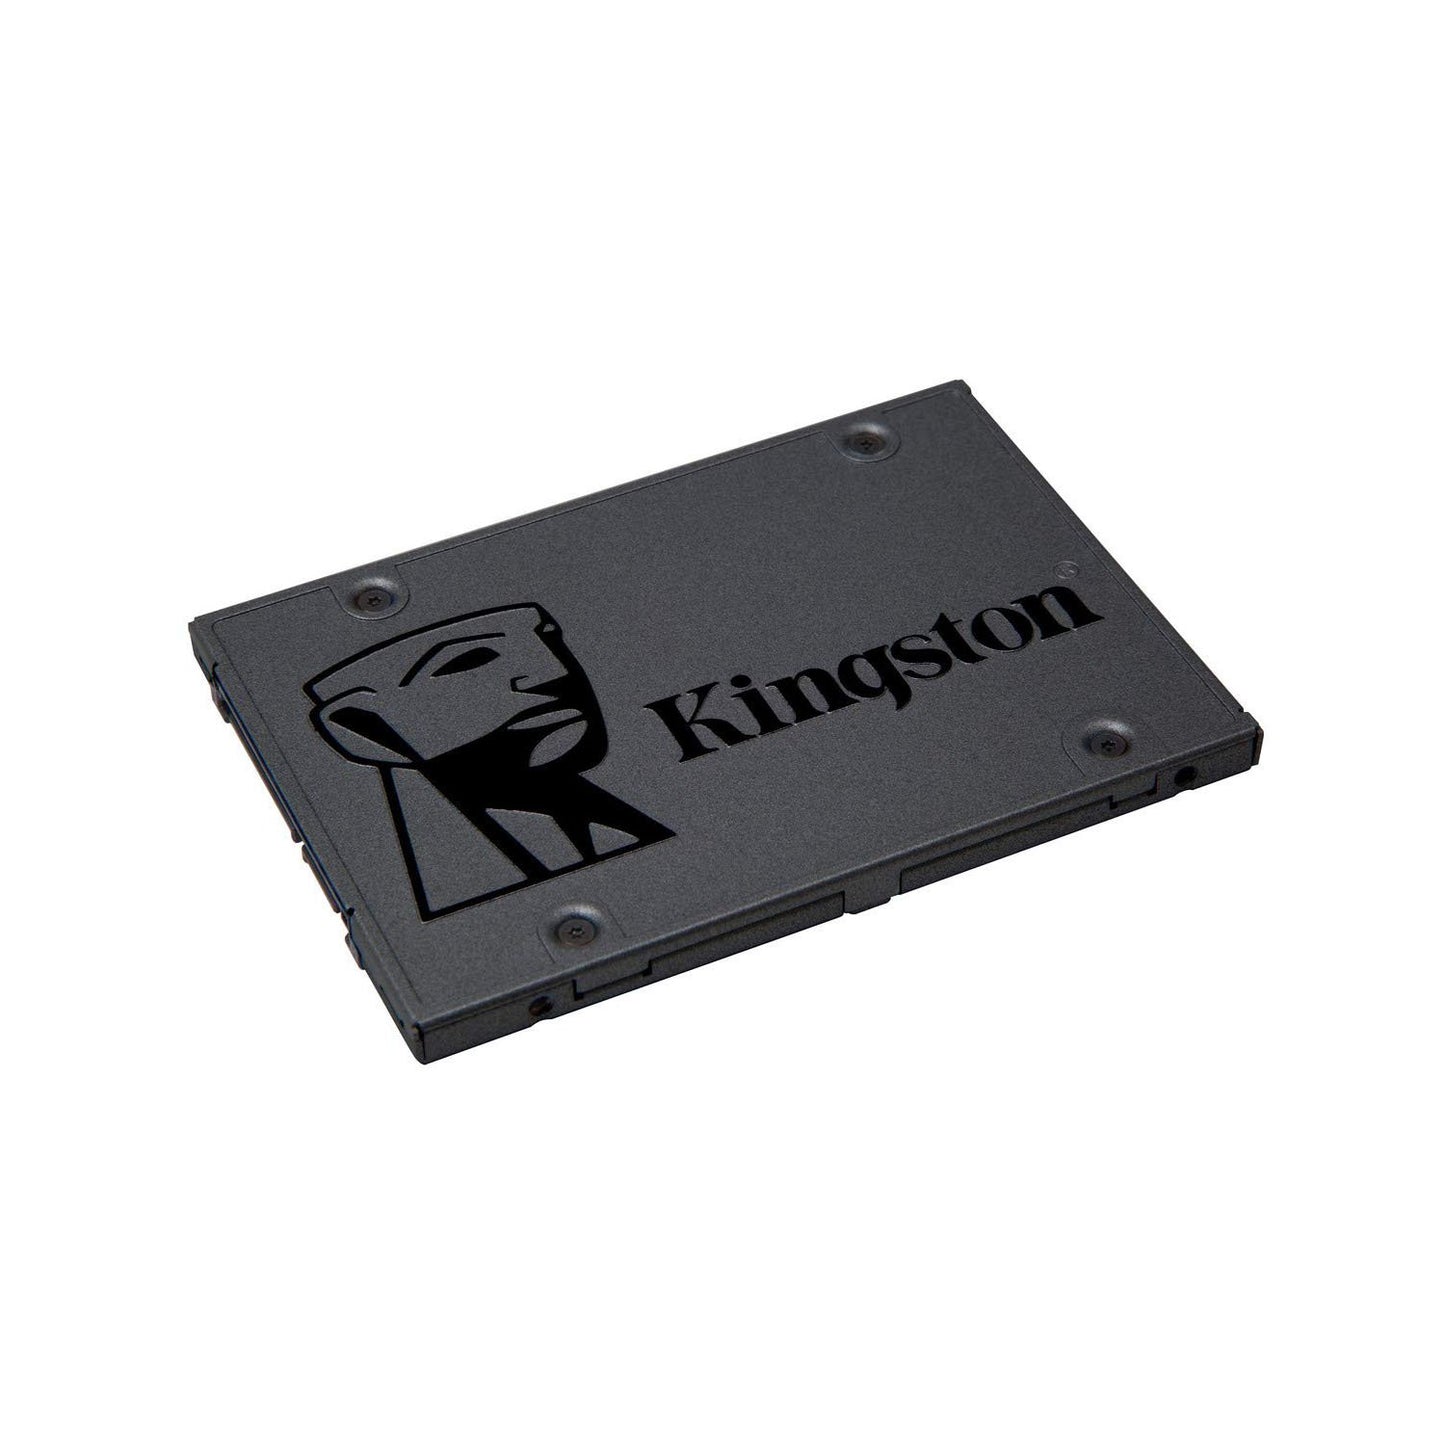 [रिपैक्ड] किंग्स्टन A400 480GB 2.5 इंच इंटरनल सॉलिड स्टेट ड्राइव